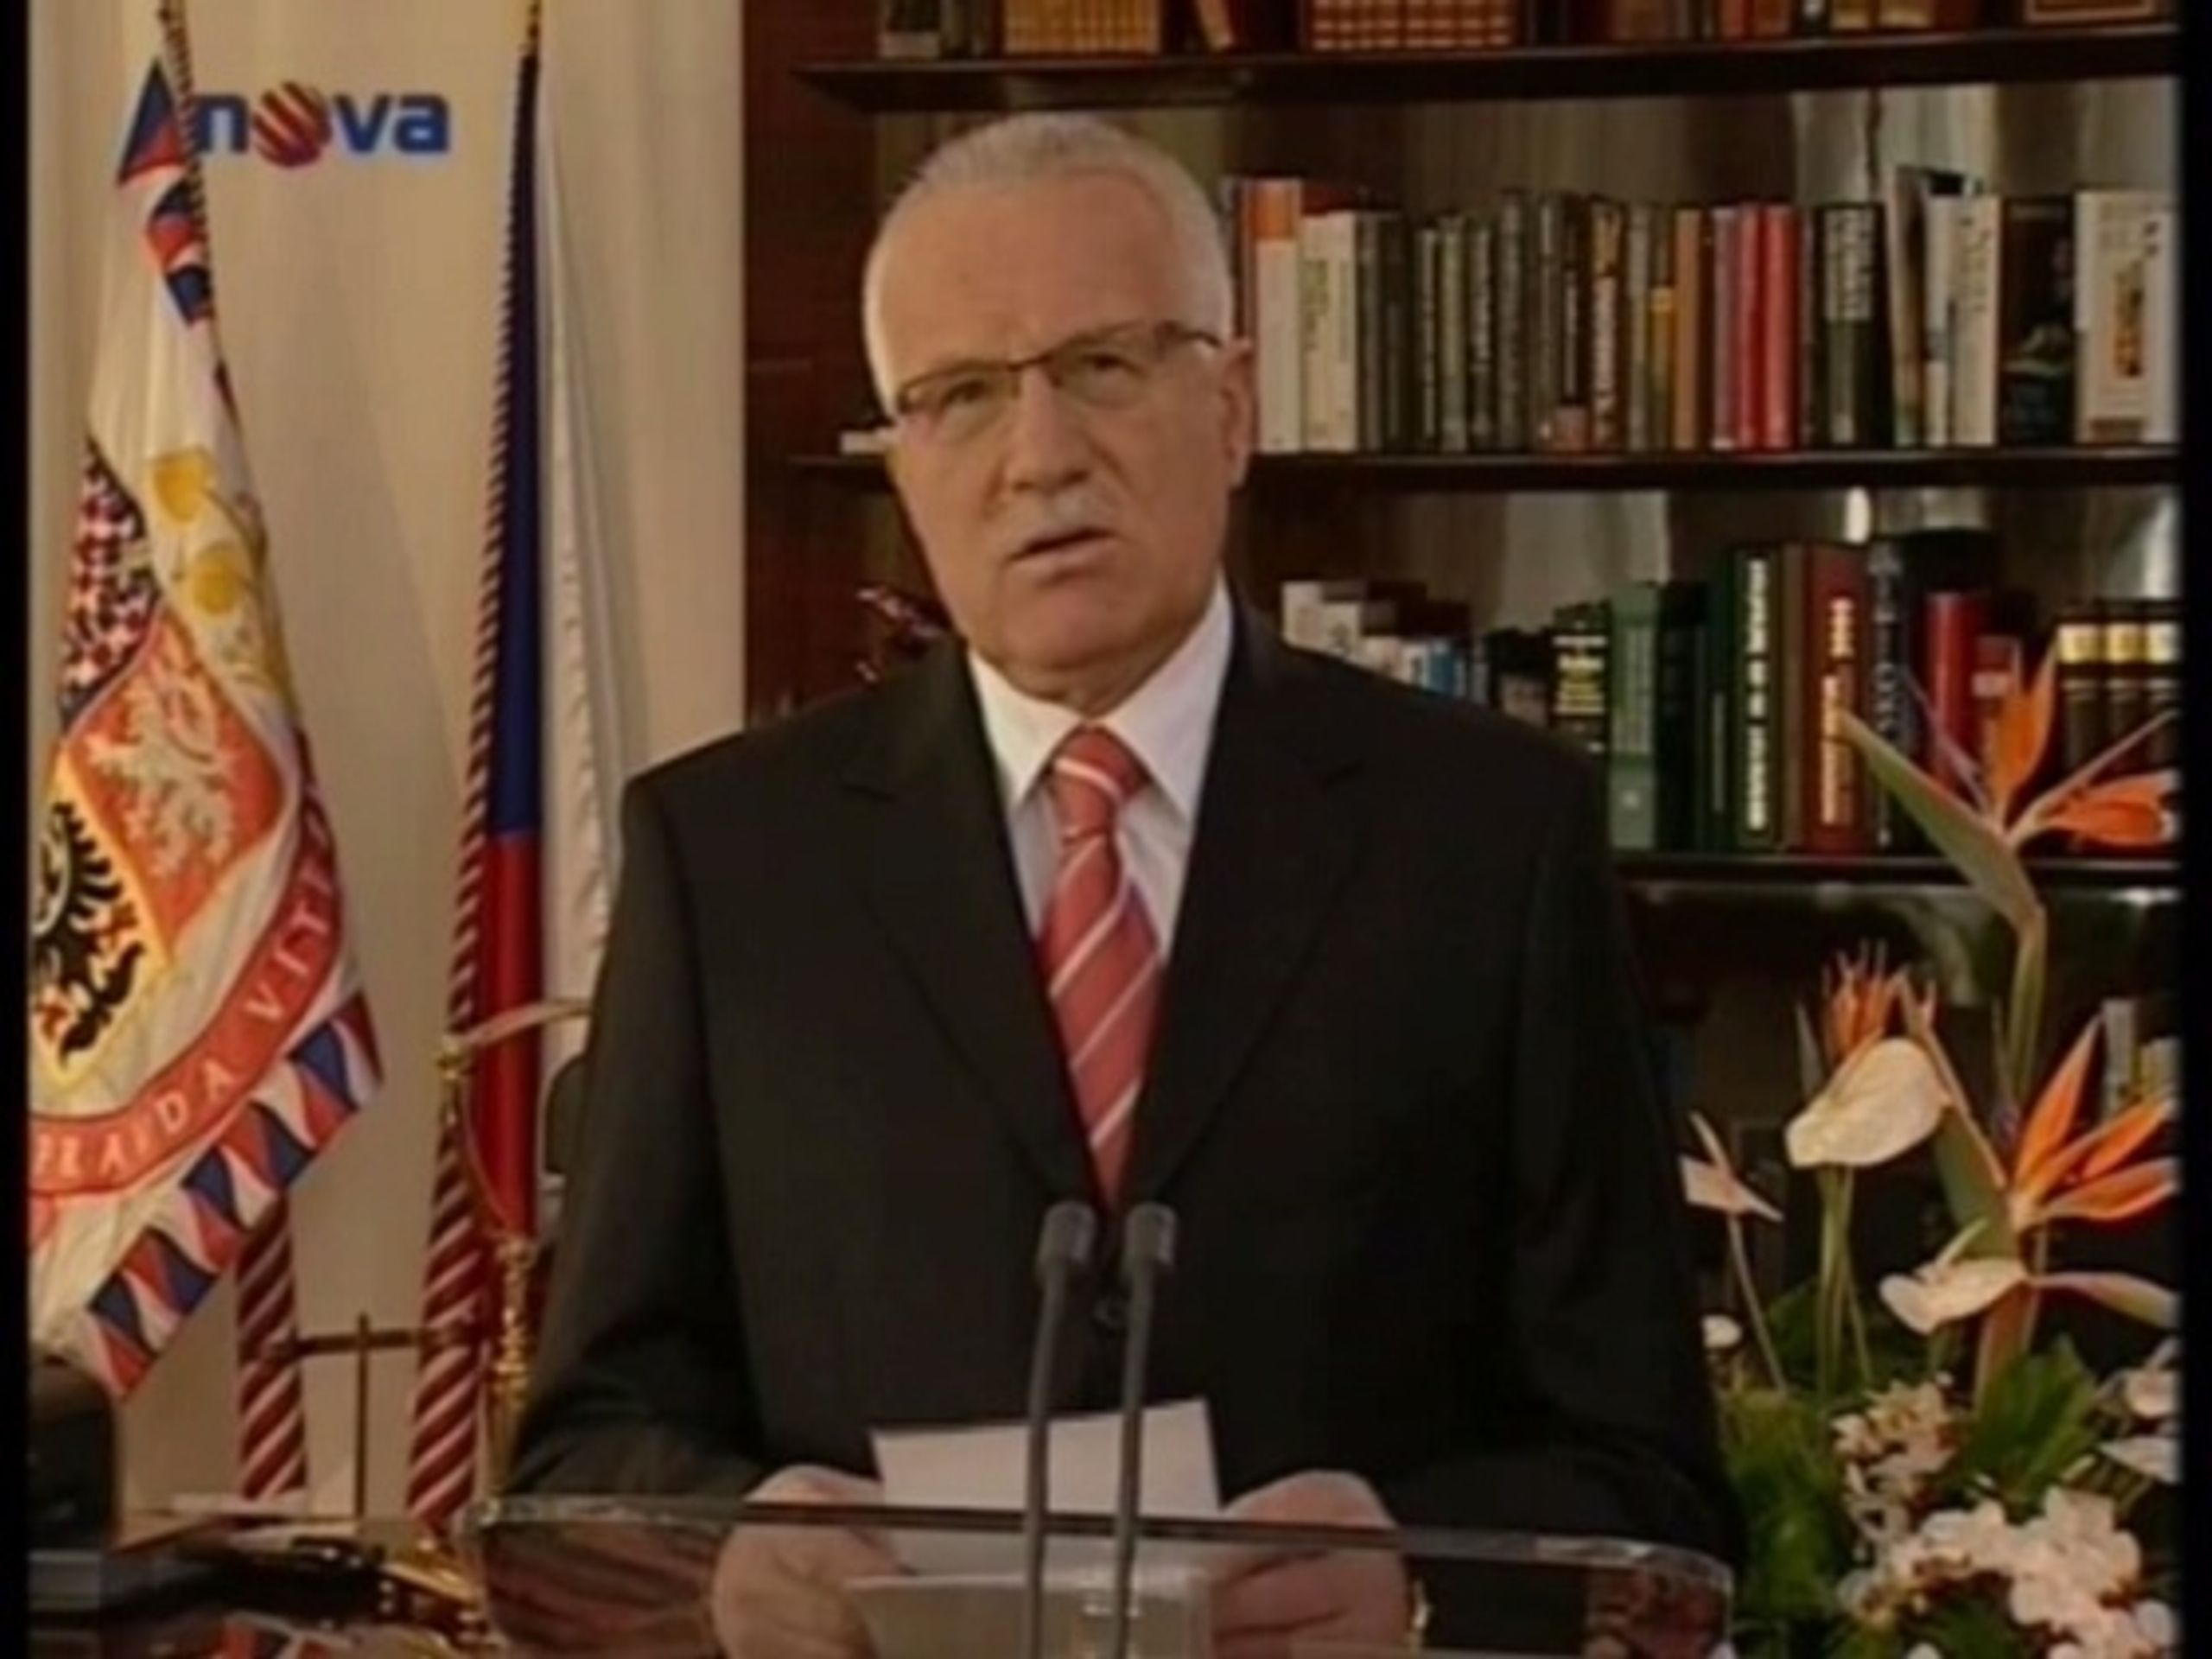 Prezident Václav Klaus - Klausův projev hodnotili politici se smíšenými pocity (1/3)